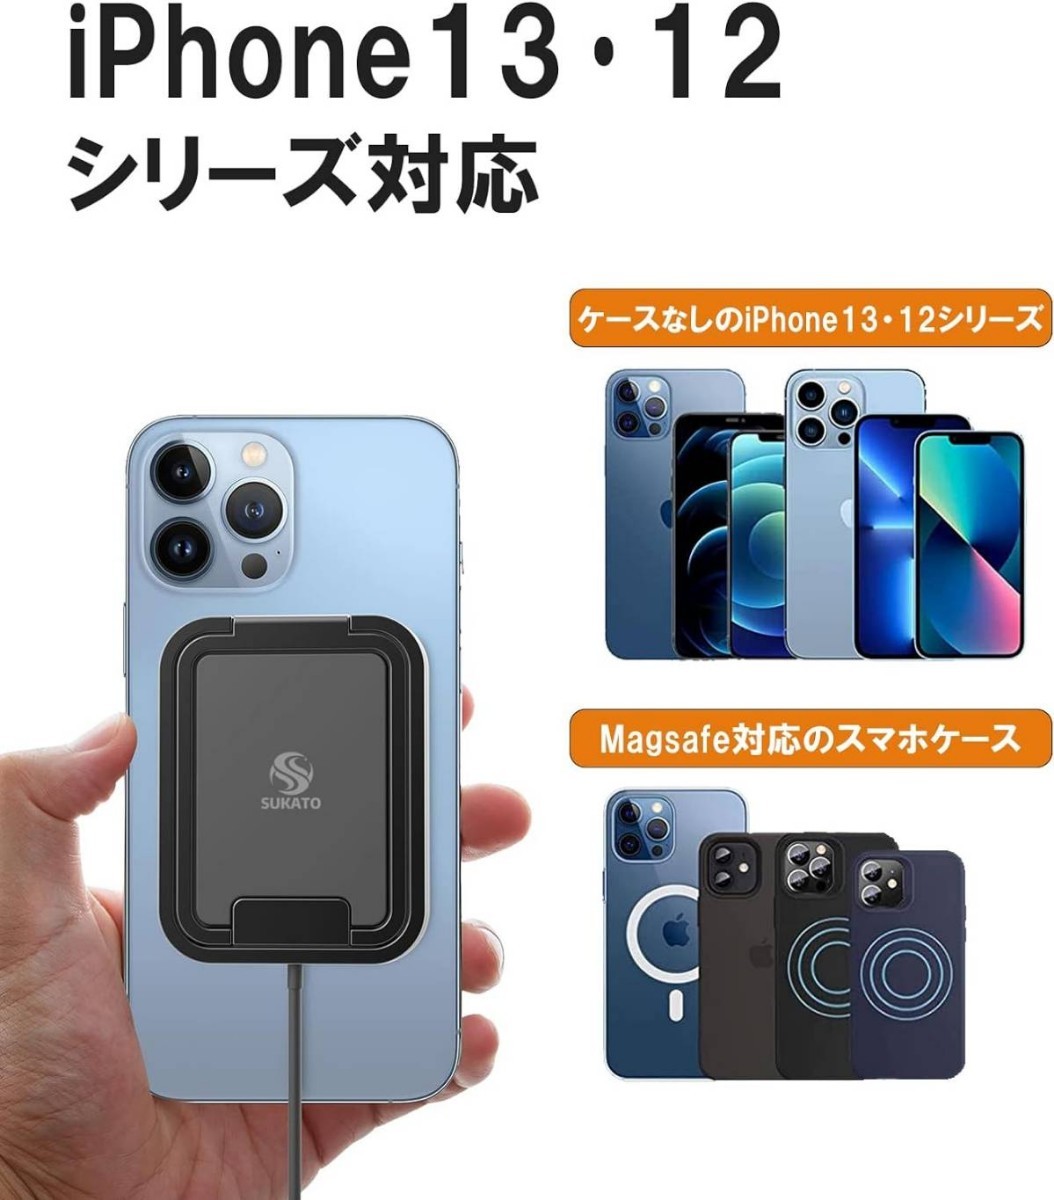 SUKATO iPhone ワイヤレス充電器 スタンド型「 角度自由調節 」7.5W出力 ケーブル長さ1.5m _画像9